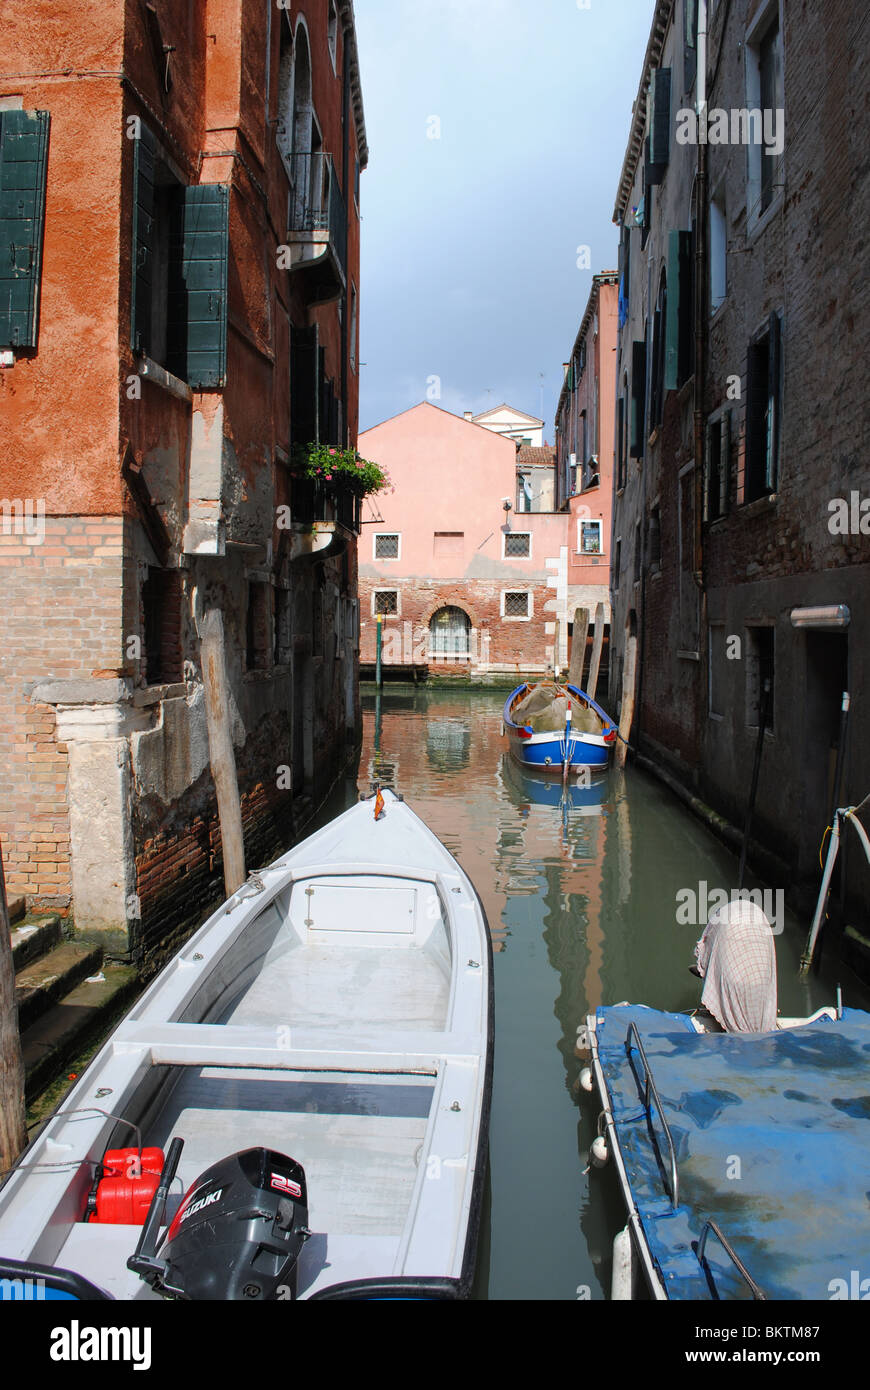 Canal et bateaux, Venise, Italie Banque D'Images